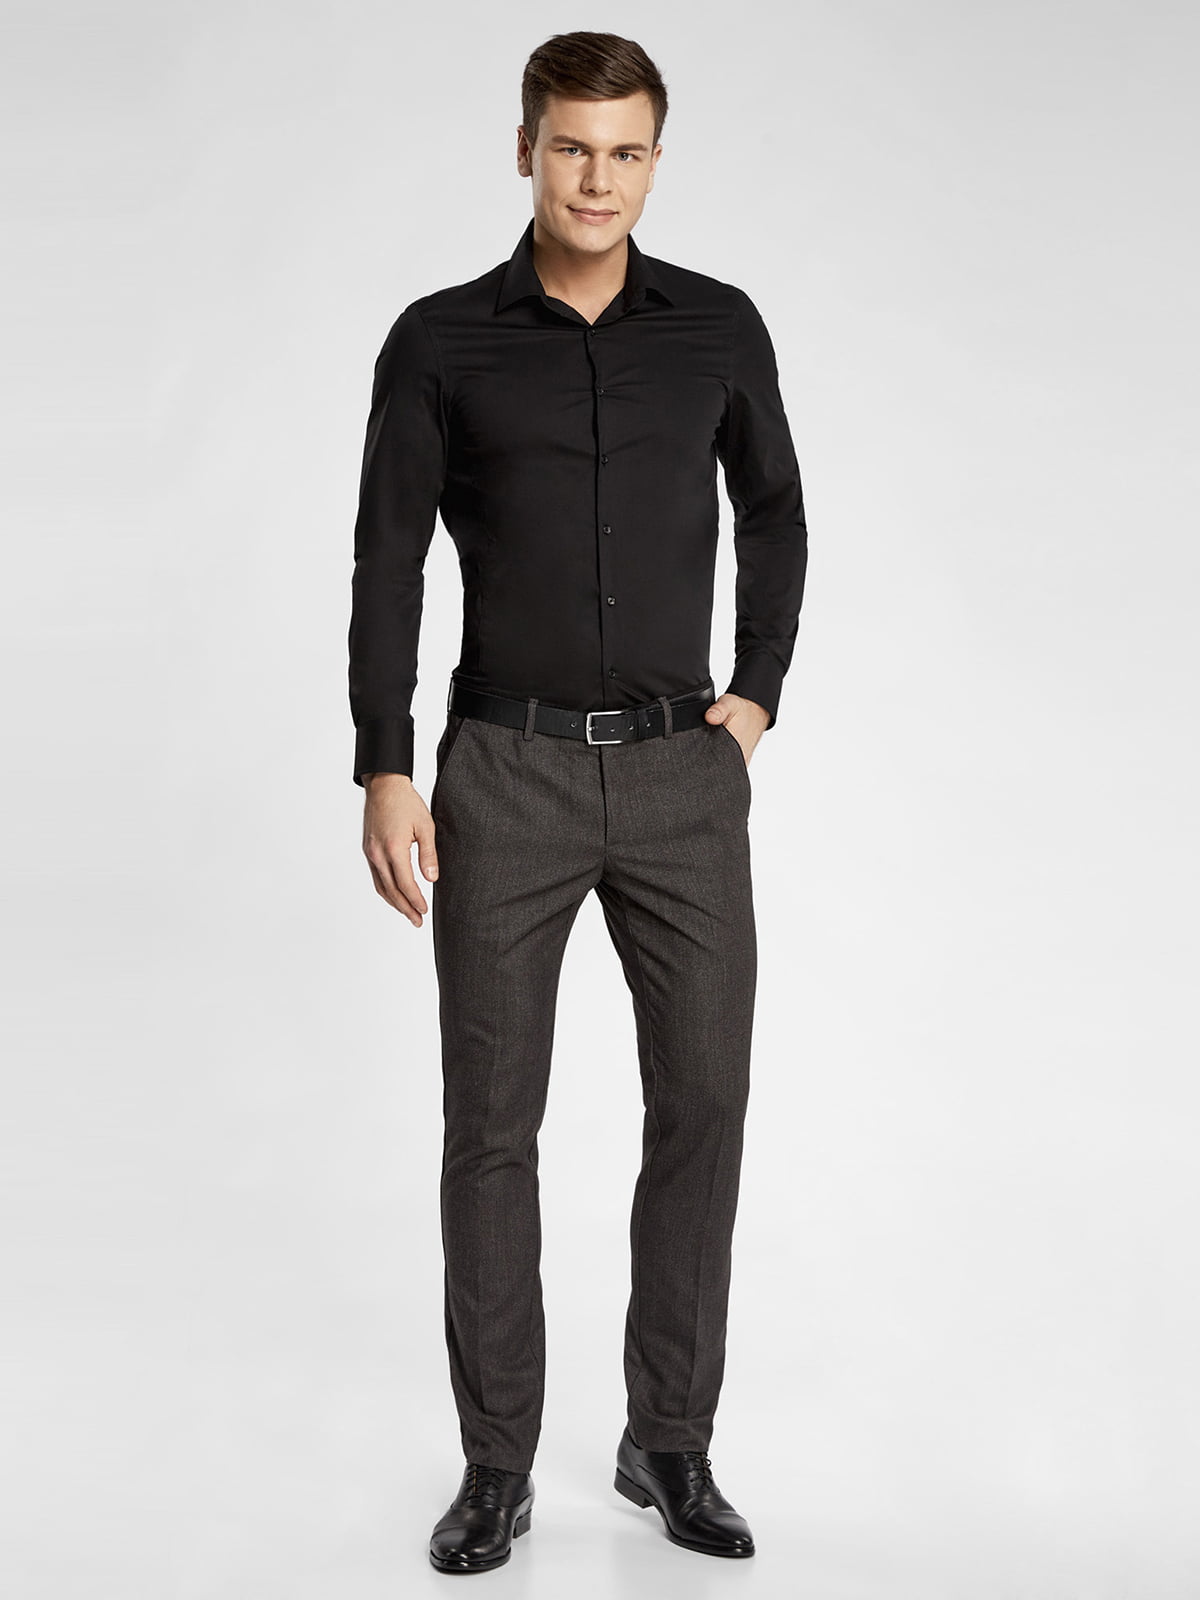 Черная рубашка и брюки мужчина